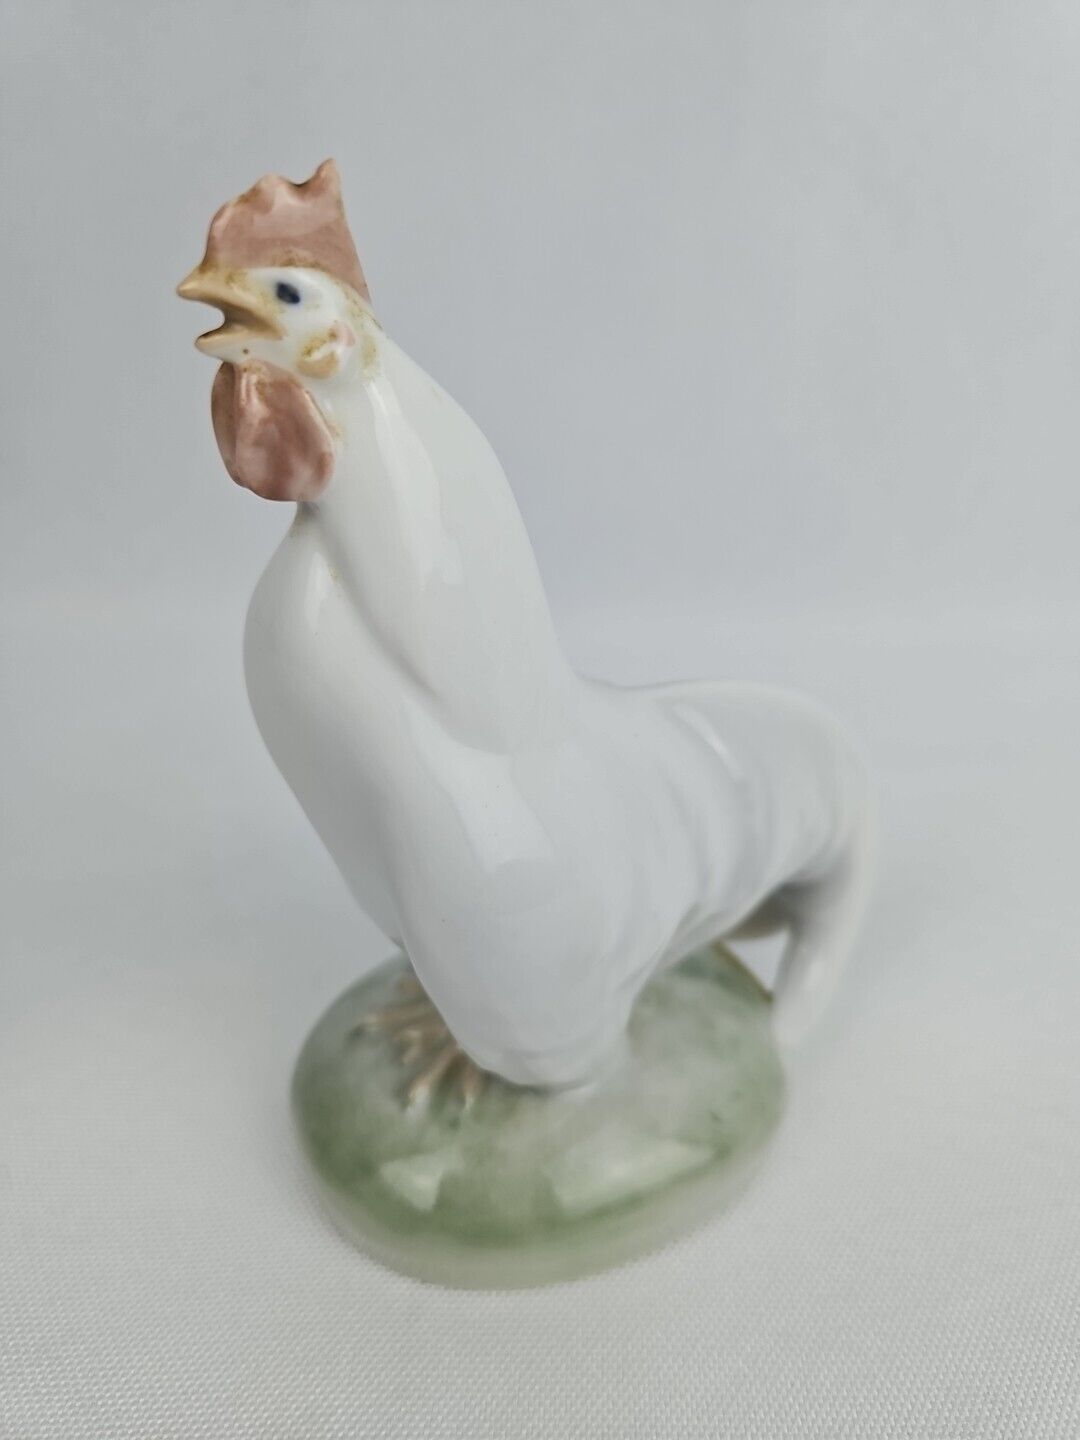 Vintage Royal Copenhagen Figurine Rooster Head Up #1126- Read Broken Comb #1079